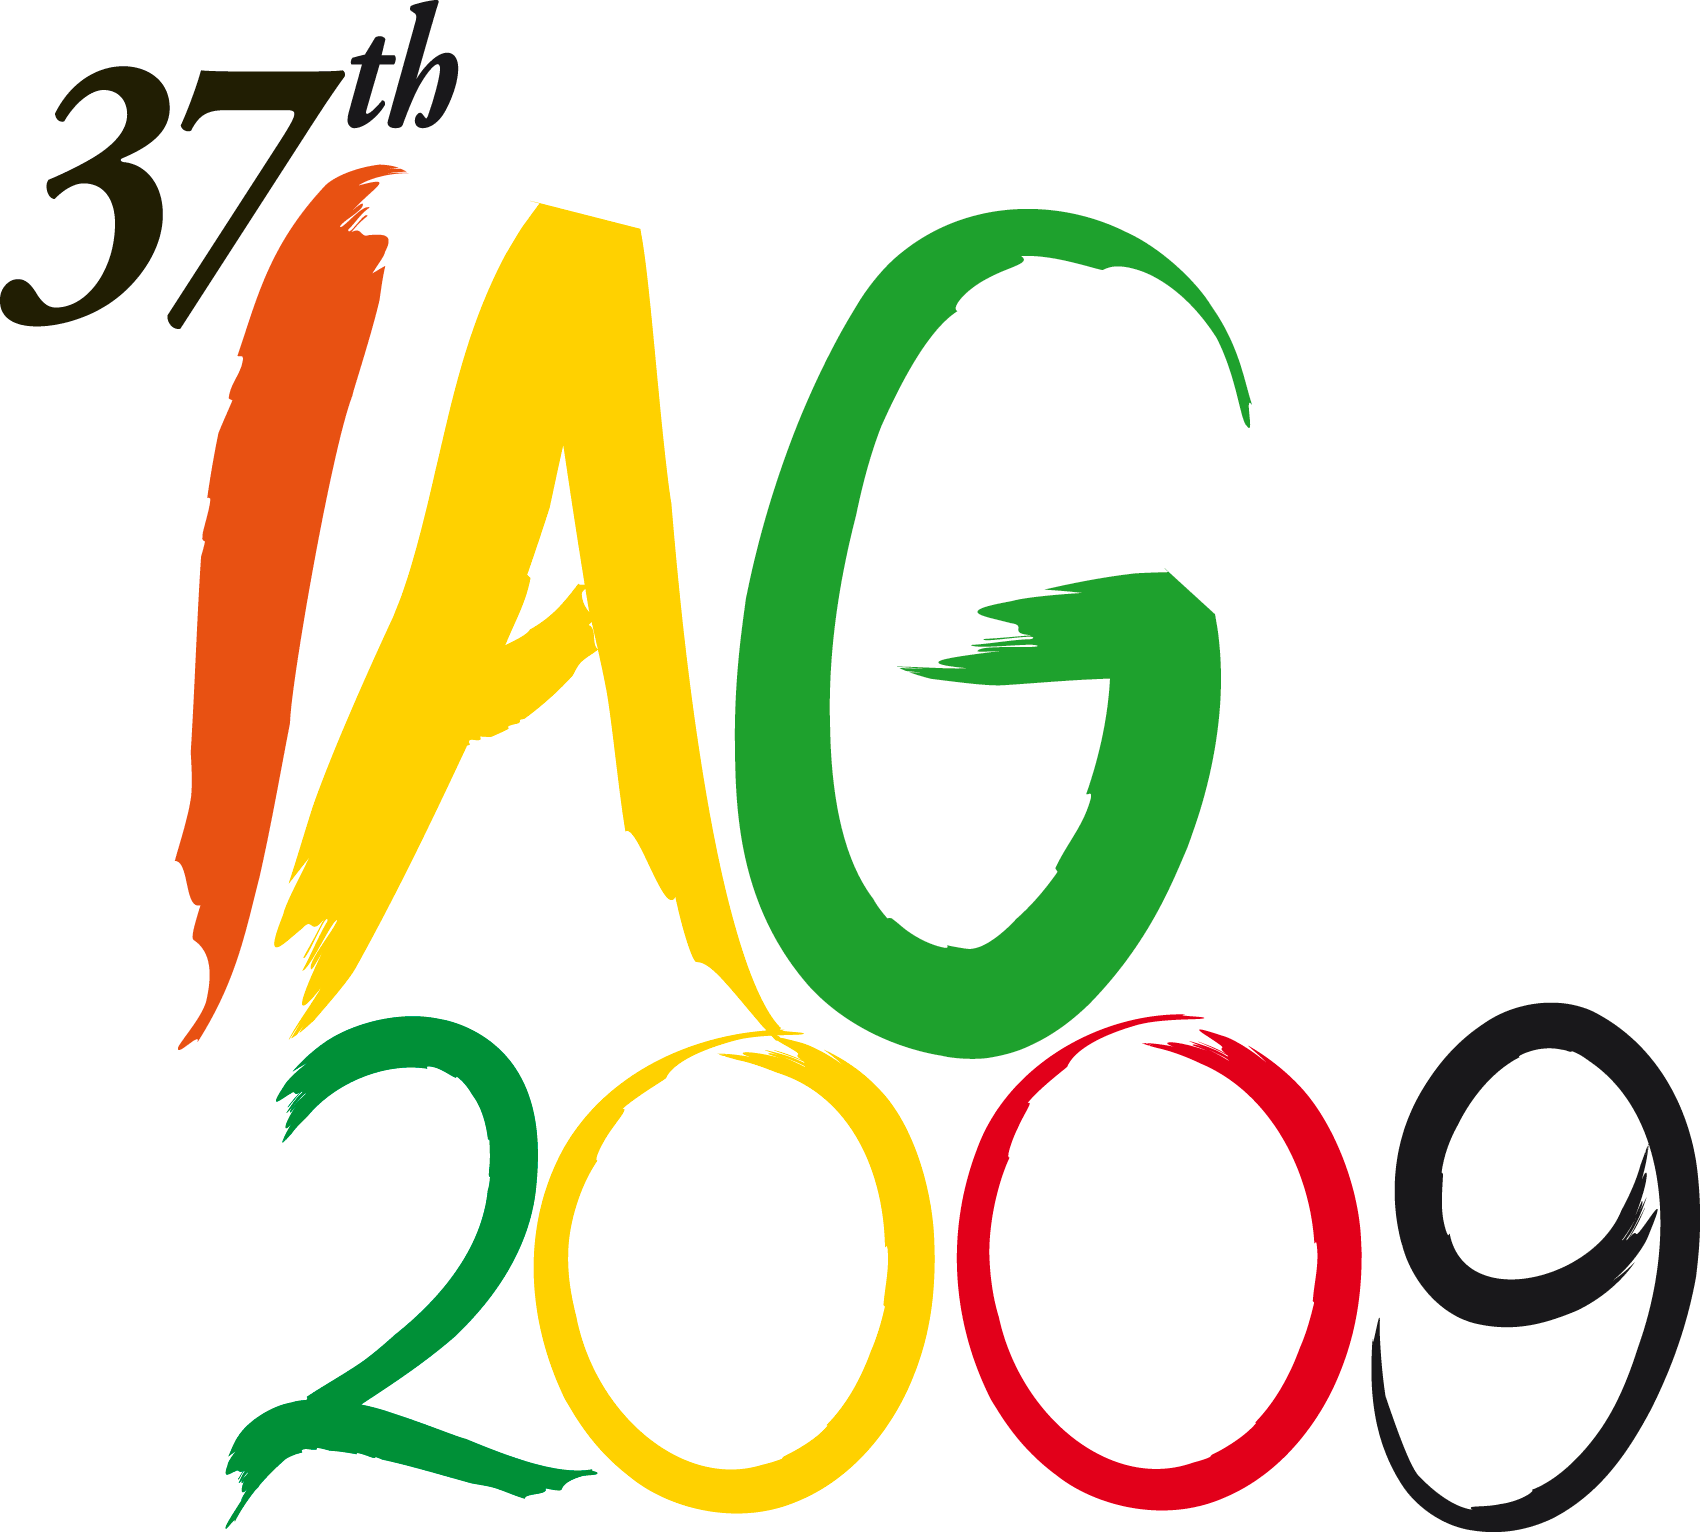 IAG2009 Logo